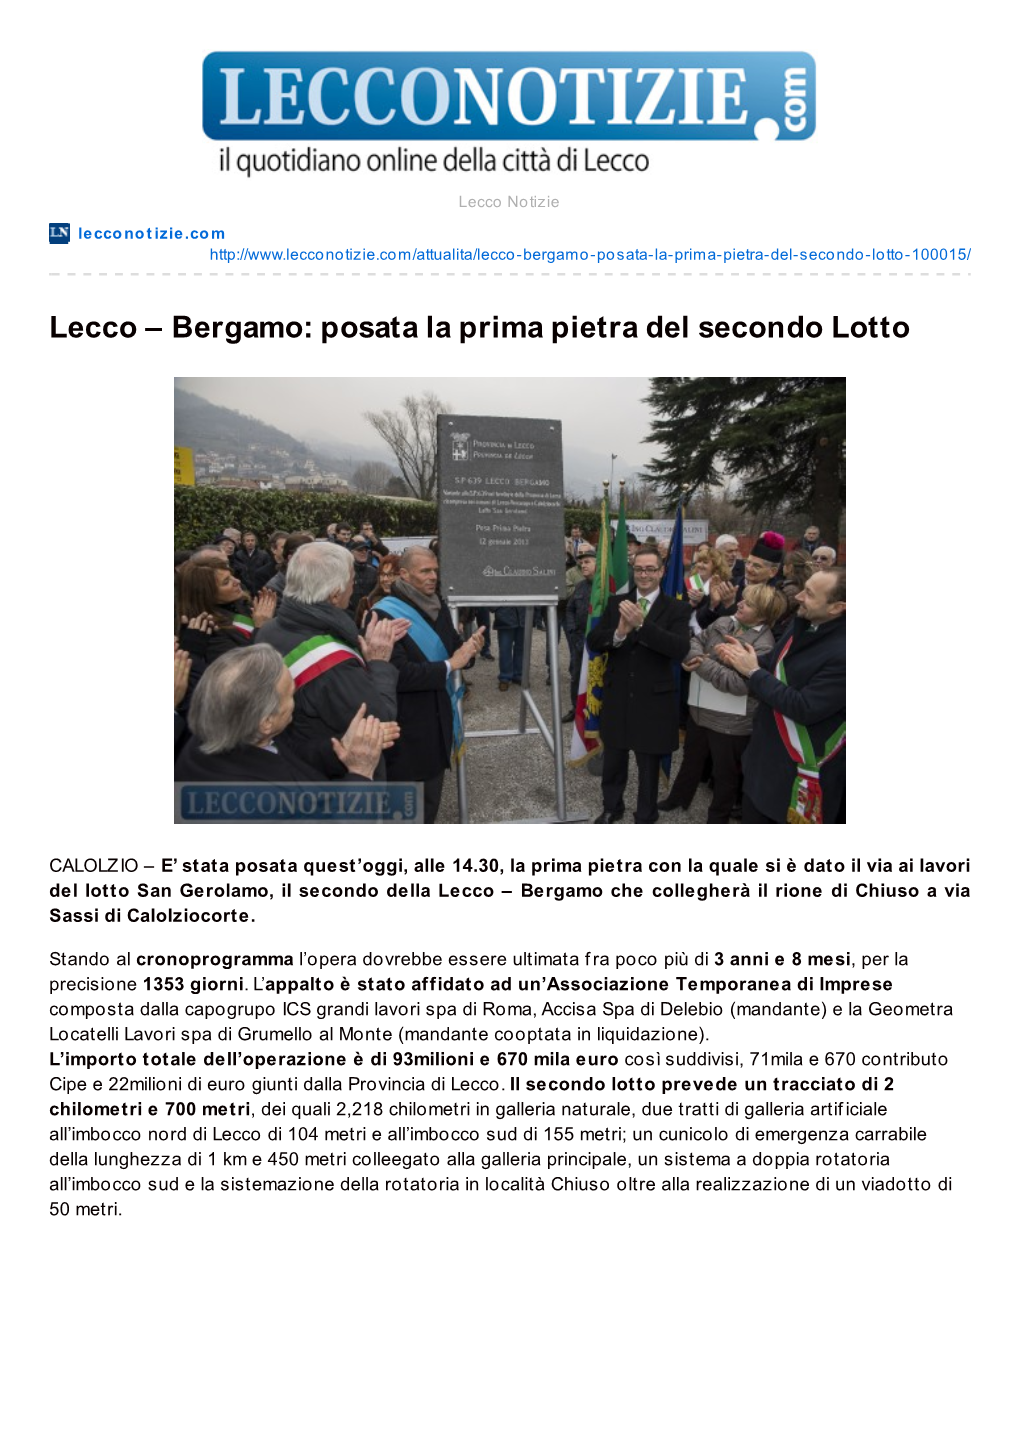 Lecco – Bergamo: Posata La Prima Pietra Del Secondo Lotto